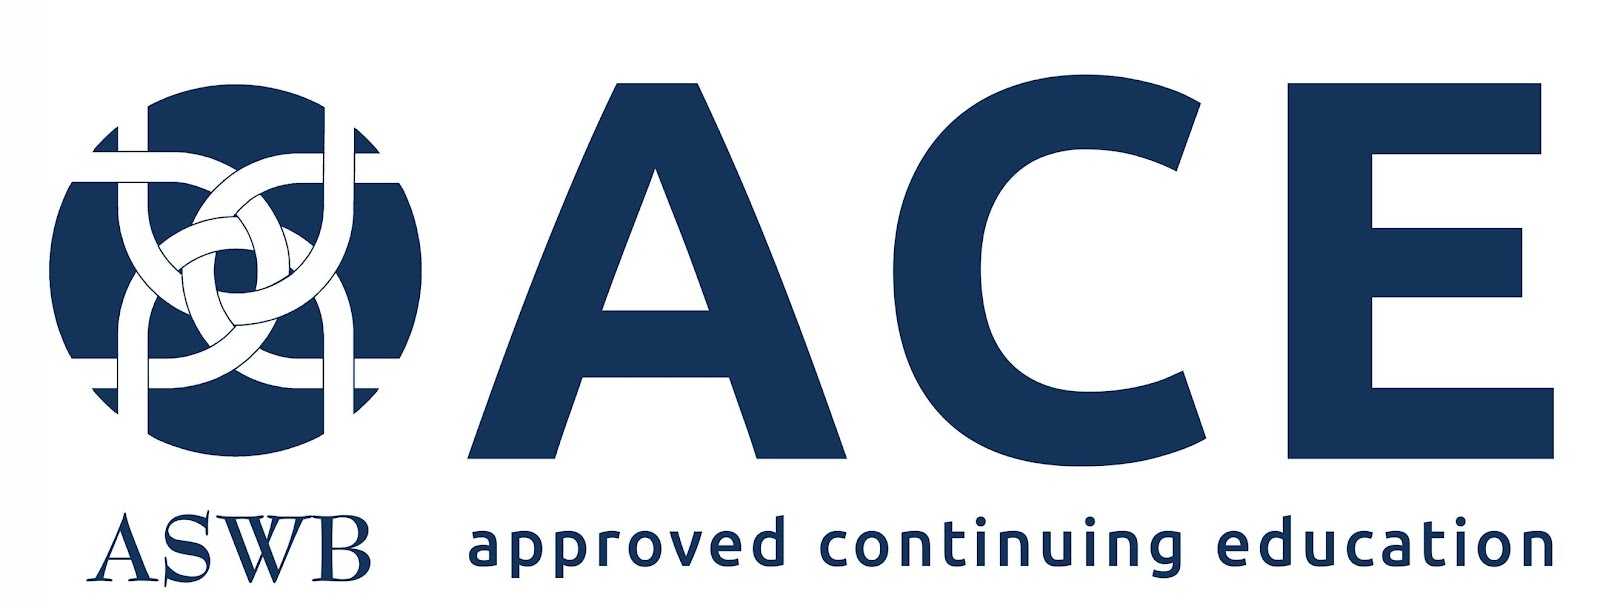 https://www.aswb.org/wp-content/uploads/2018/11/ACE-Logo-BLUE.jpg